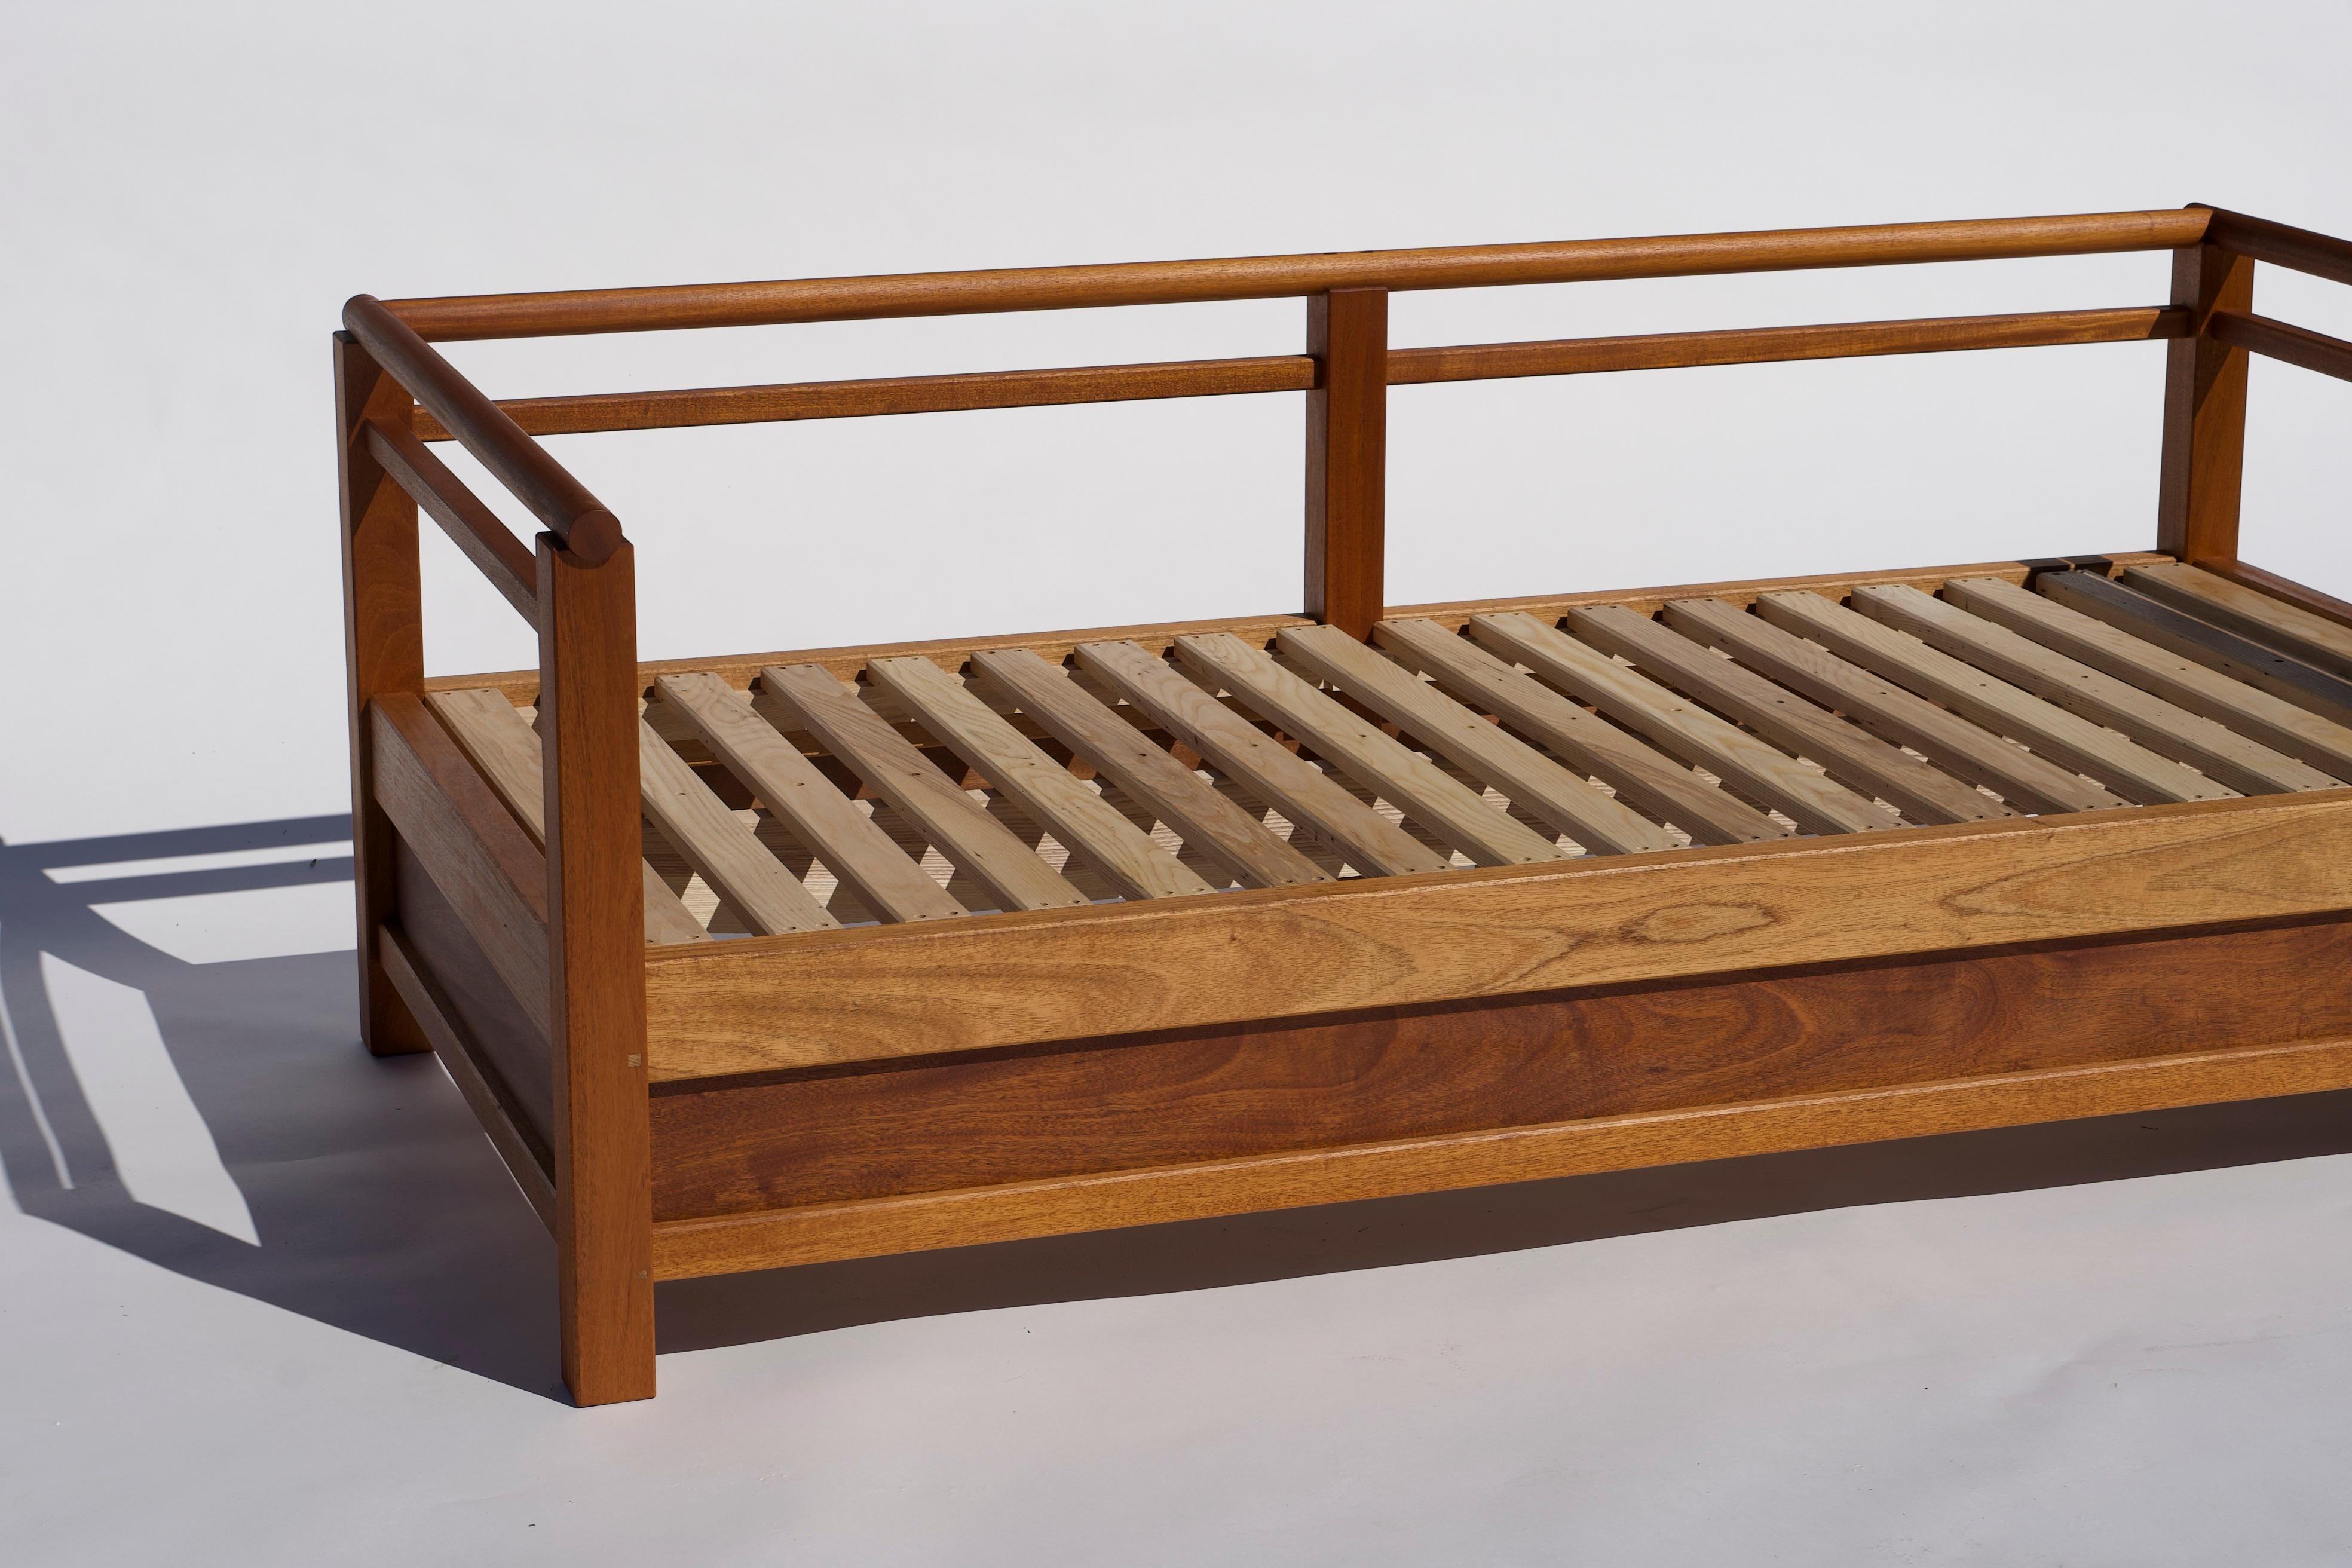 Dieses Daybed wurde von der Uji-Brücke am Naiku-Tempel in Japan inspiriert. Es ist aus honduranischem Mahagoni gefertigt und für den Innen- und Außenbereich geeignet. Dieses Tagesbett ist auch in geöltem Nussbaum oder geölter Esche erhältlich.